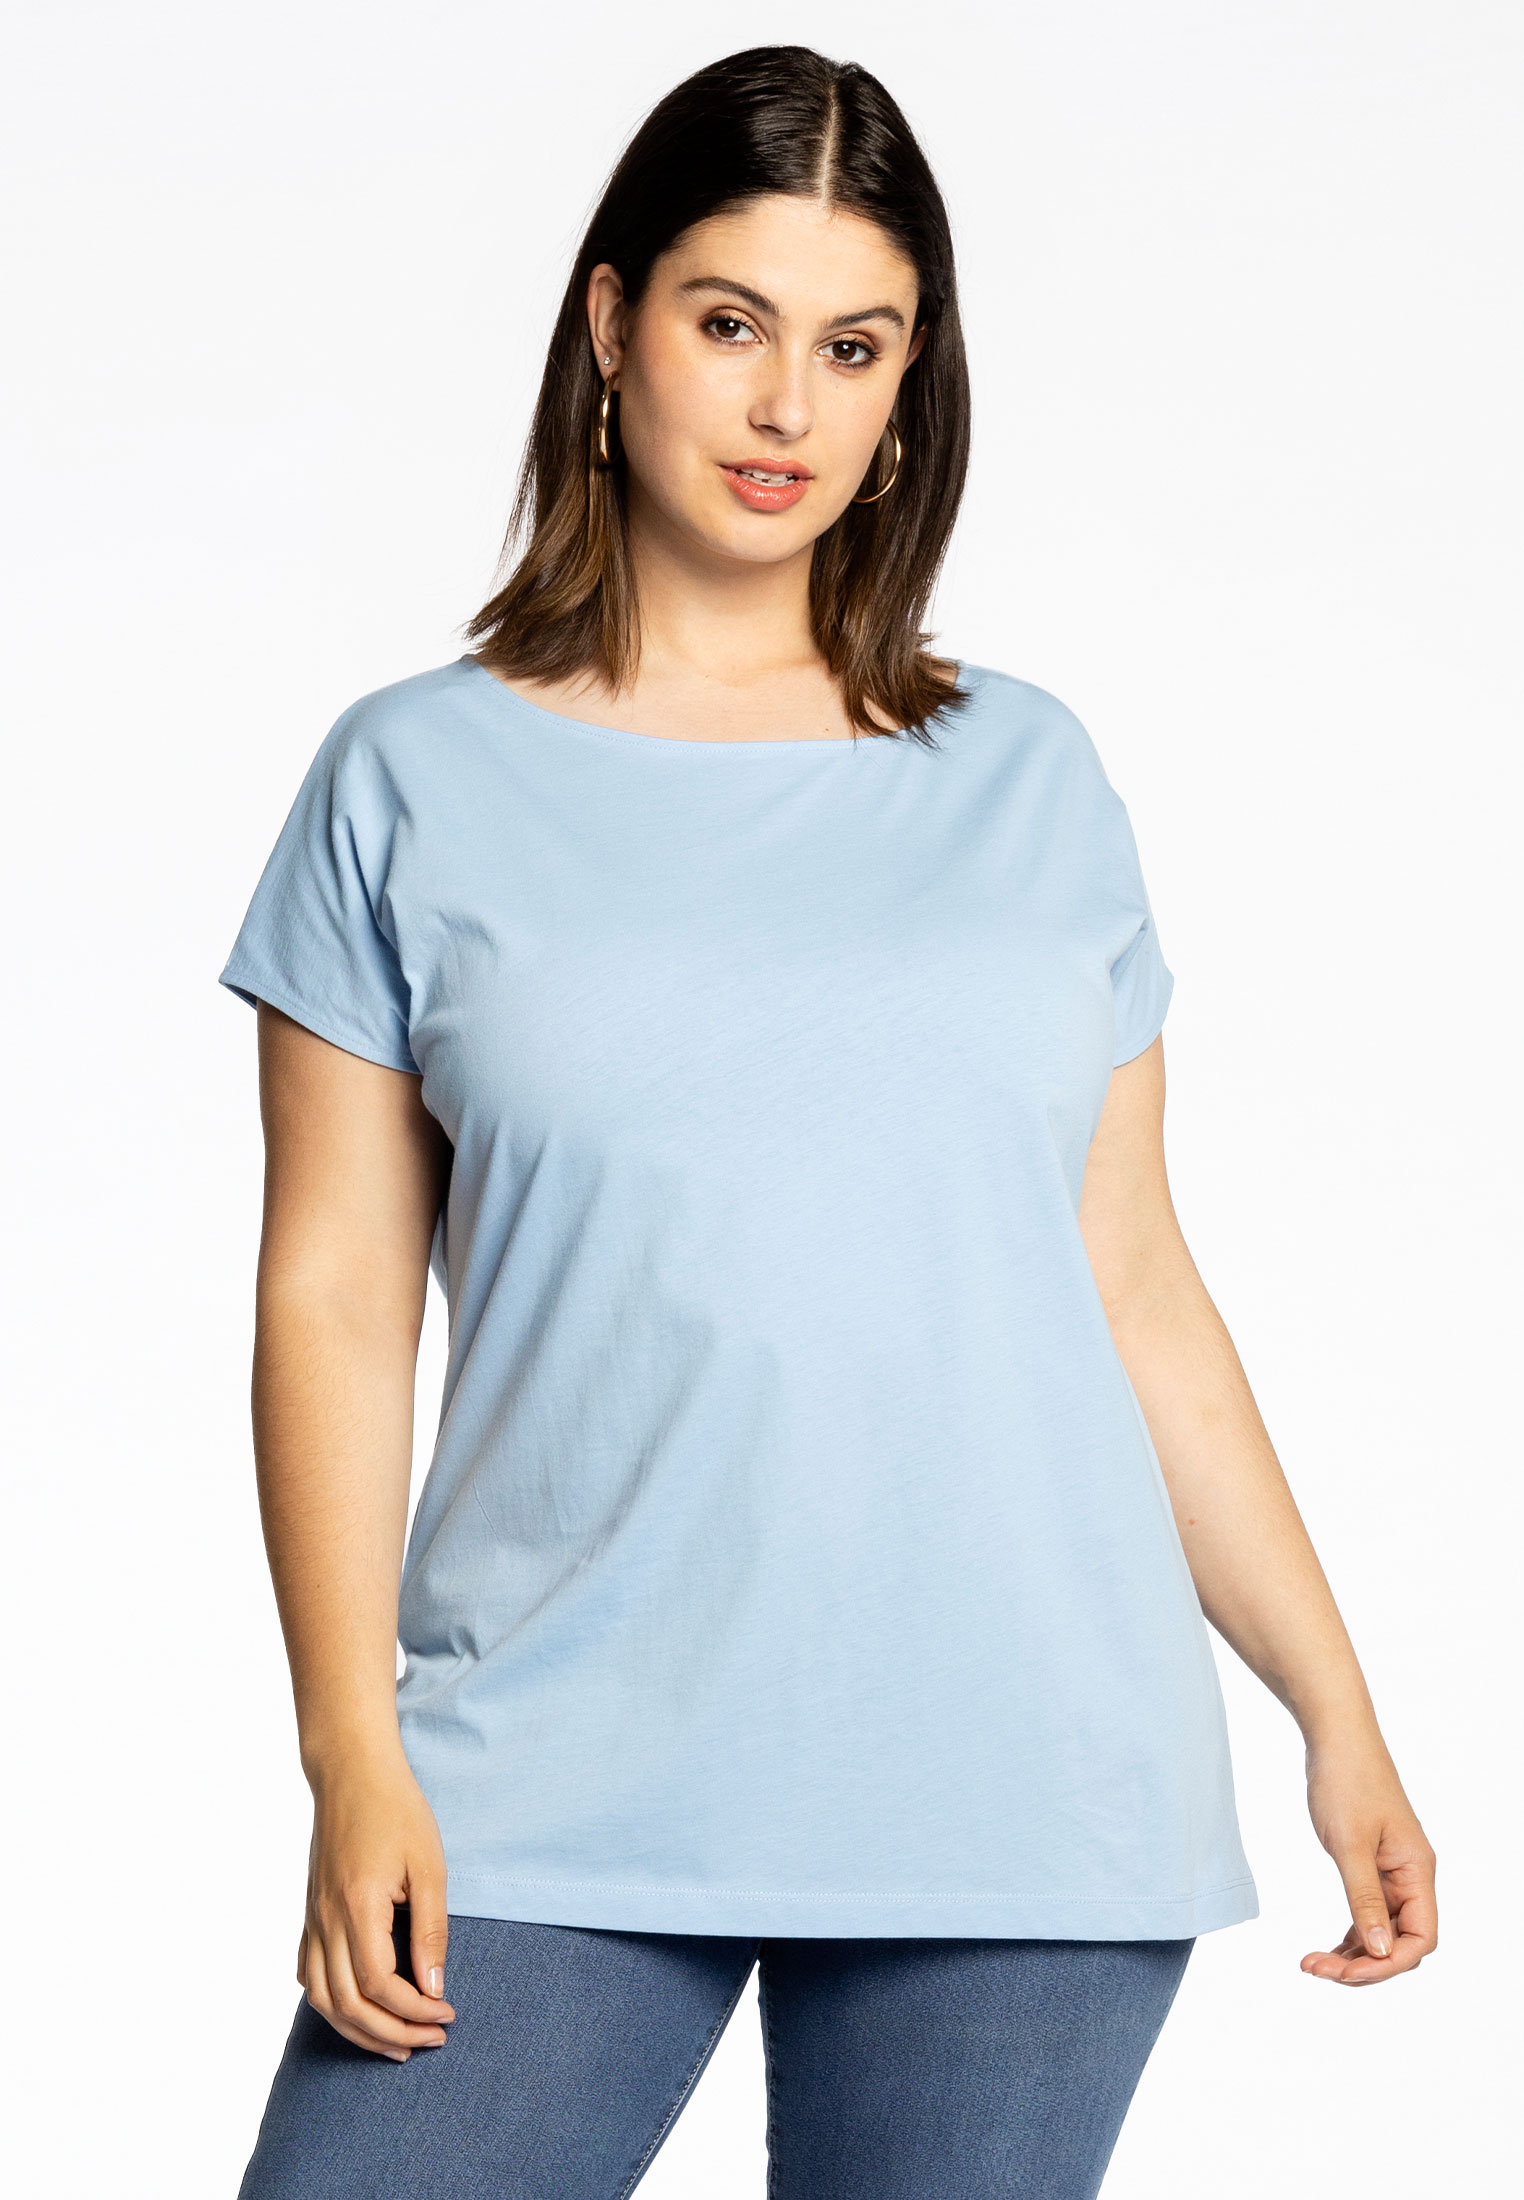 Basic T-shirt kapmouwen COTTON 46/48 light blue